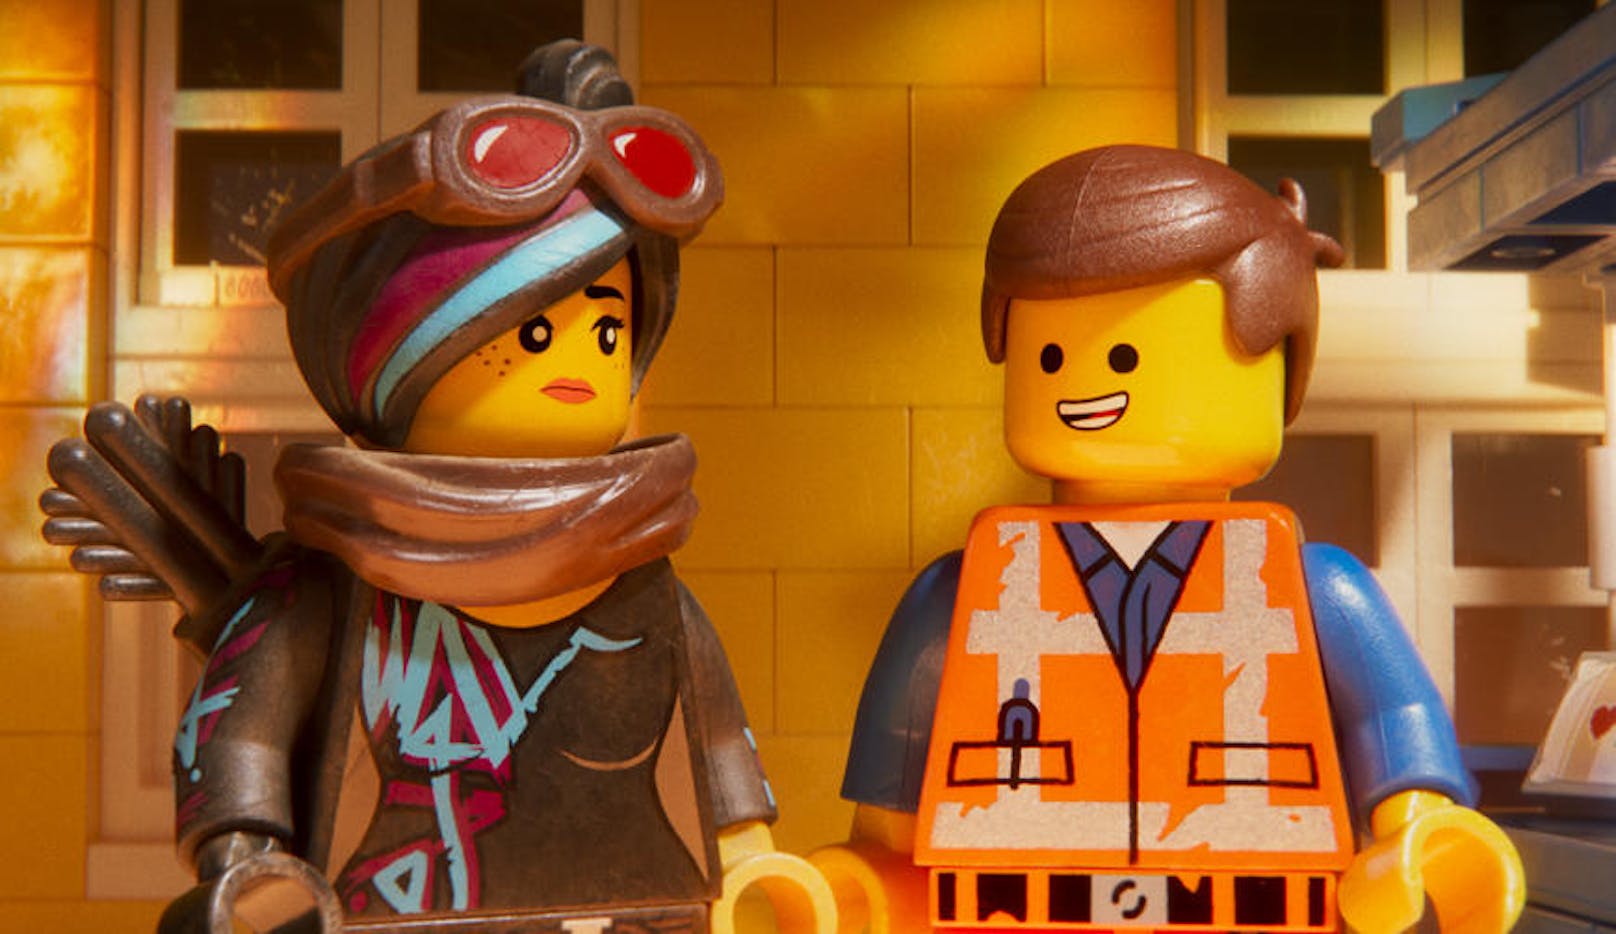 THE LEGO MOVIE 2: Als seine Freundin Wyldstyle von einem Alien entführt wird, reist ihr Emmet ins Lego-Weltall nach. 

Kinostart: 8. Februar